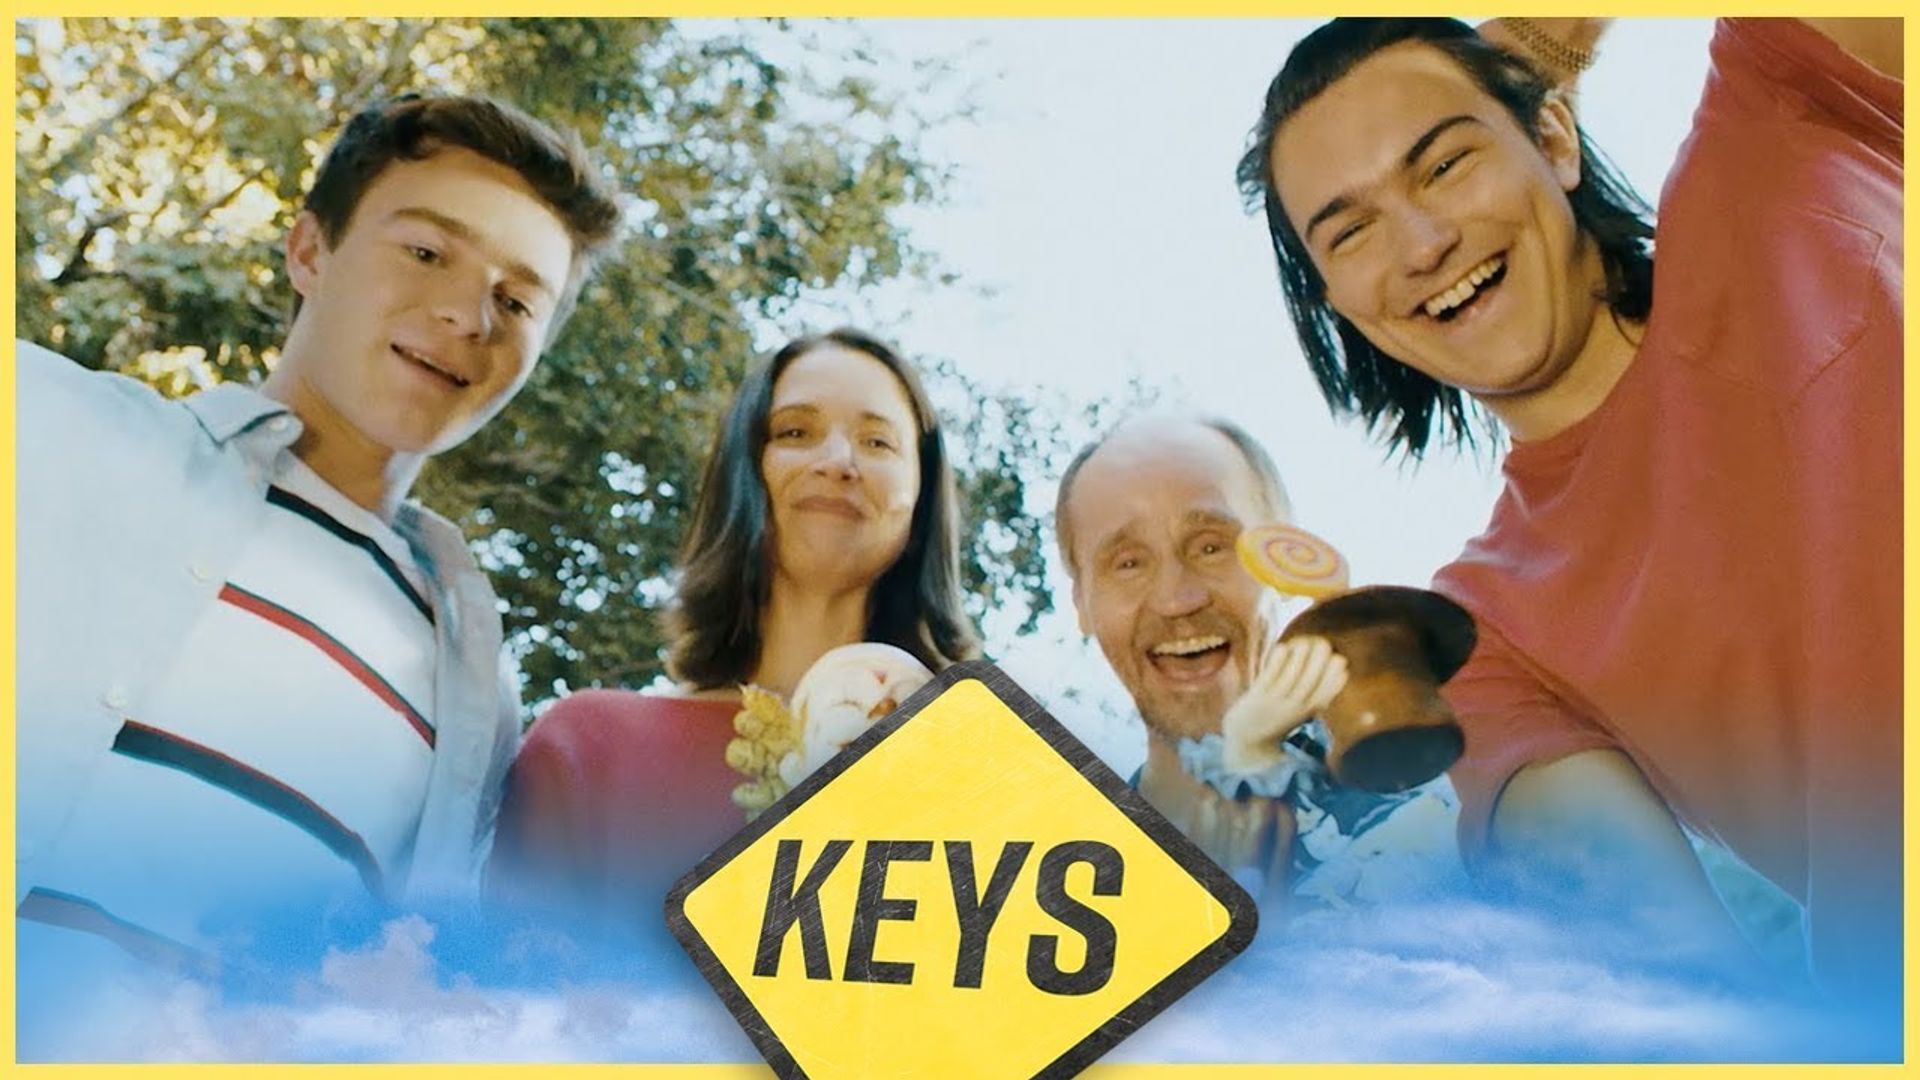 Keys background